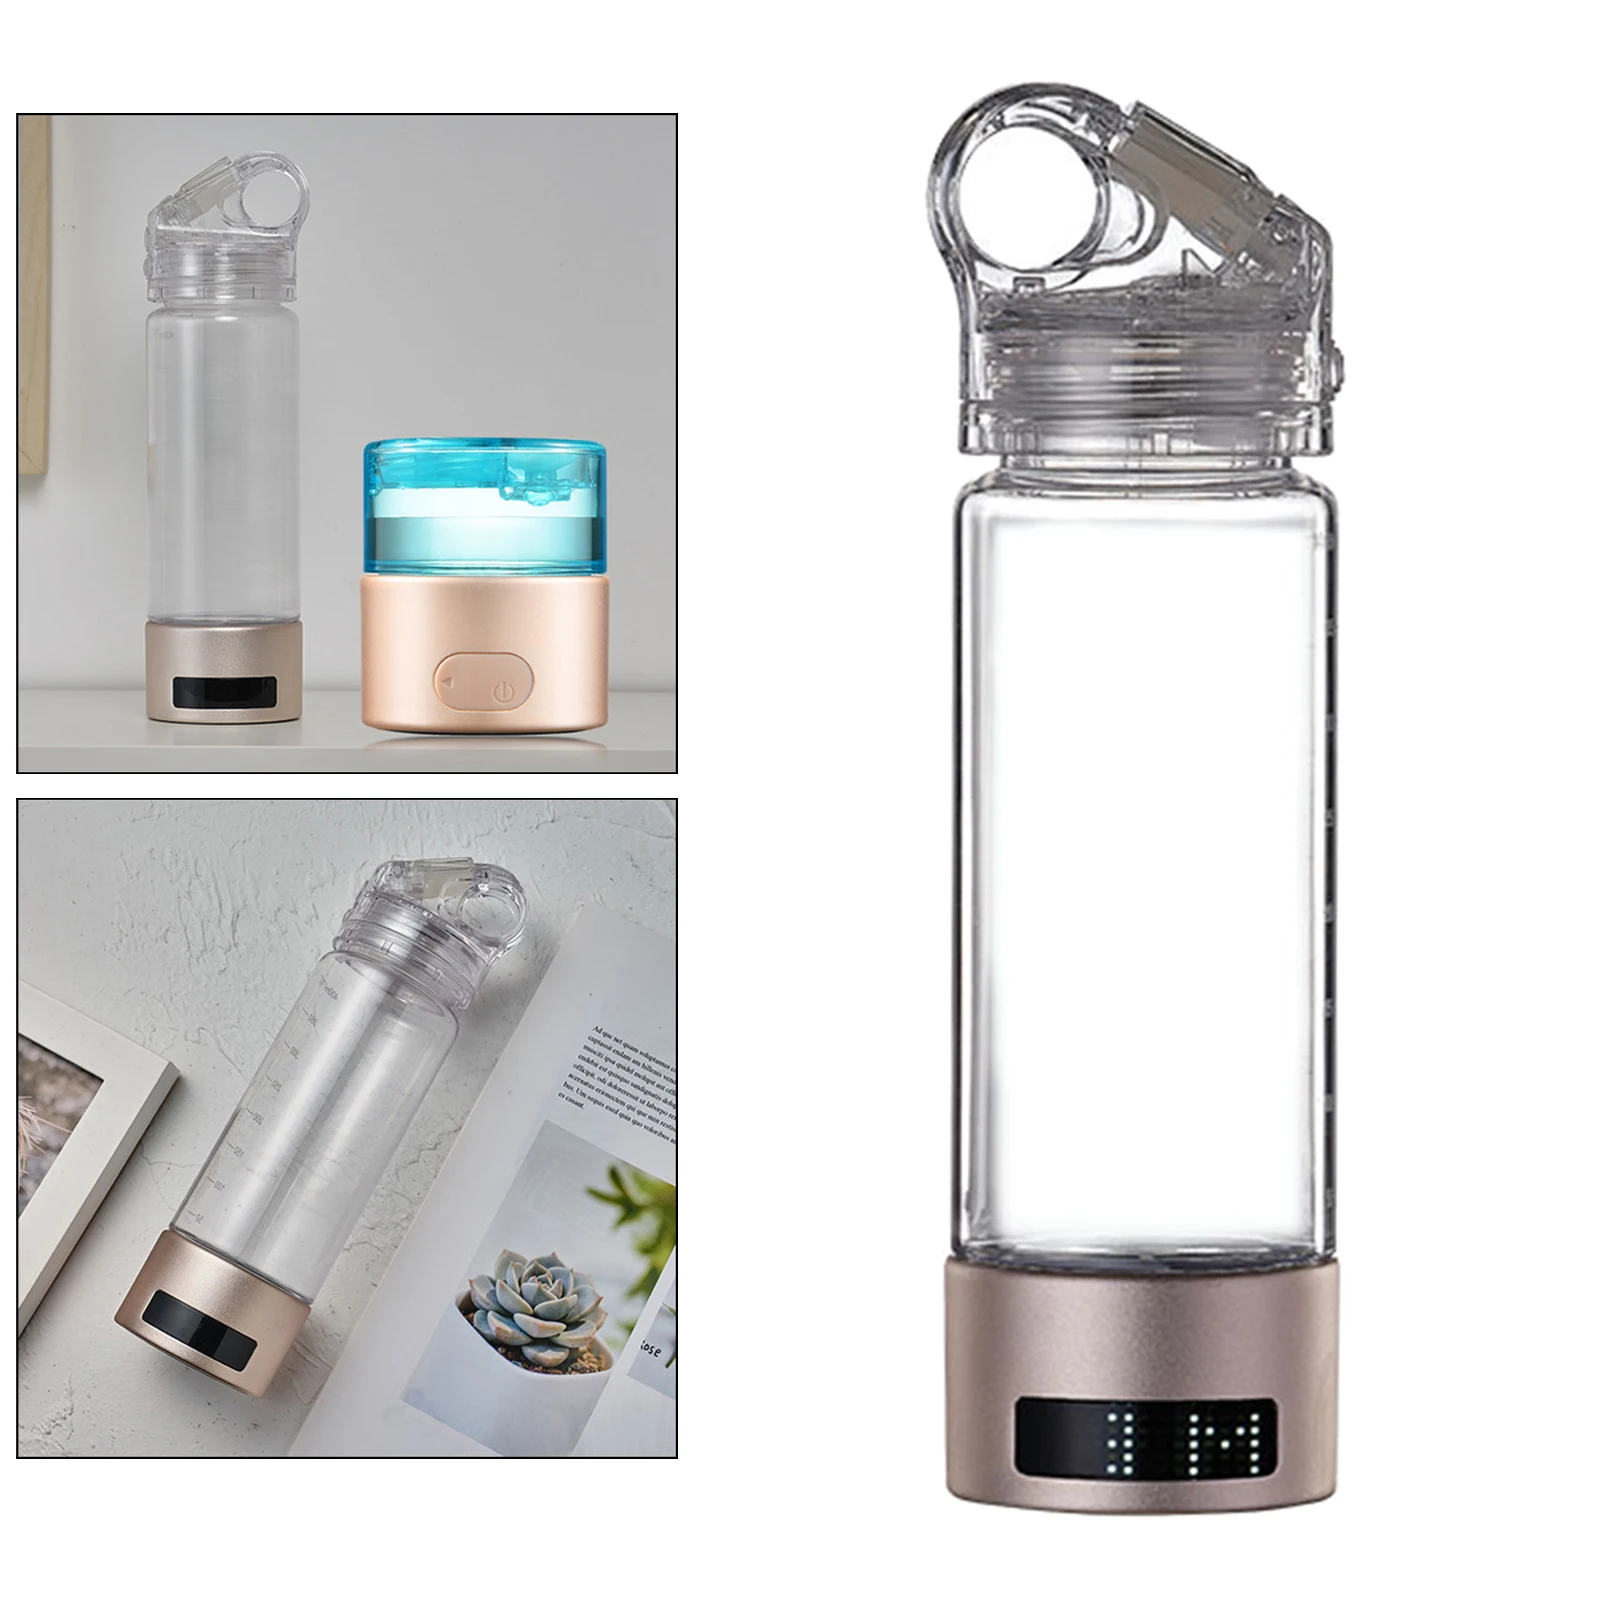 

Бутылка для водородной воды с USB-зарядкой, устройство для обогащения воды водородом